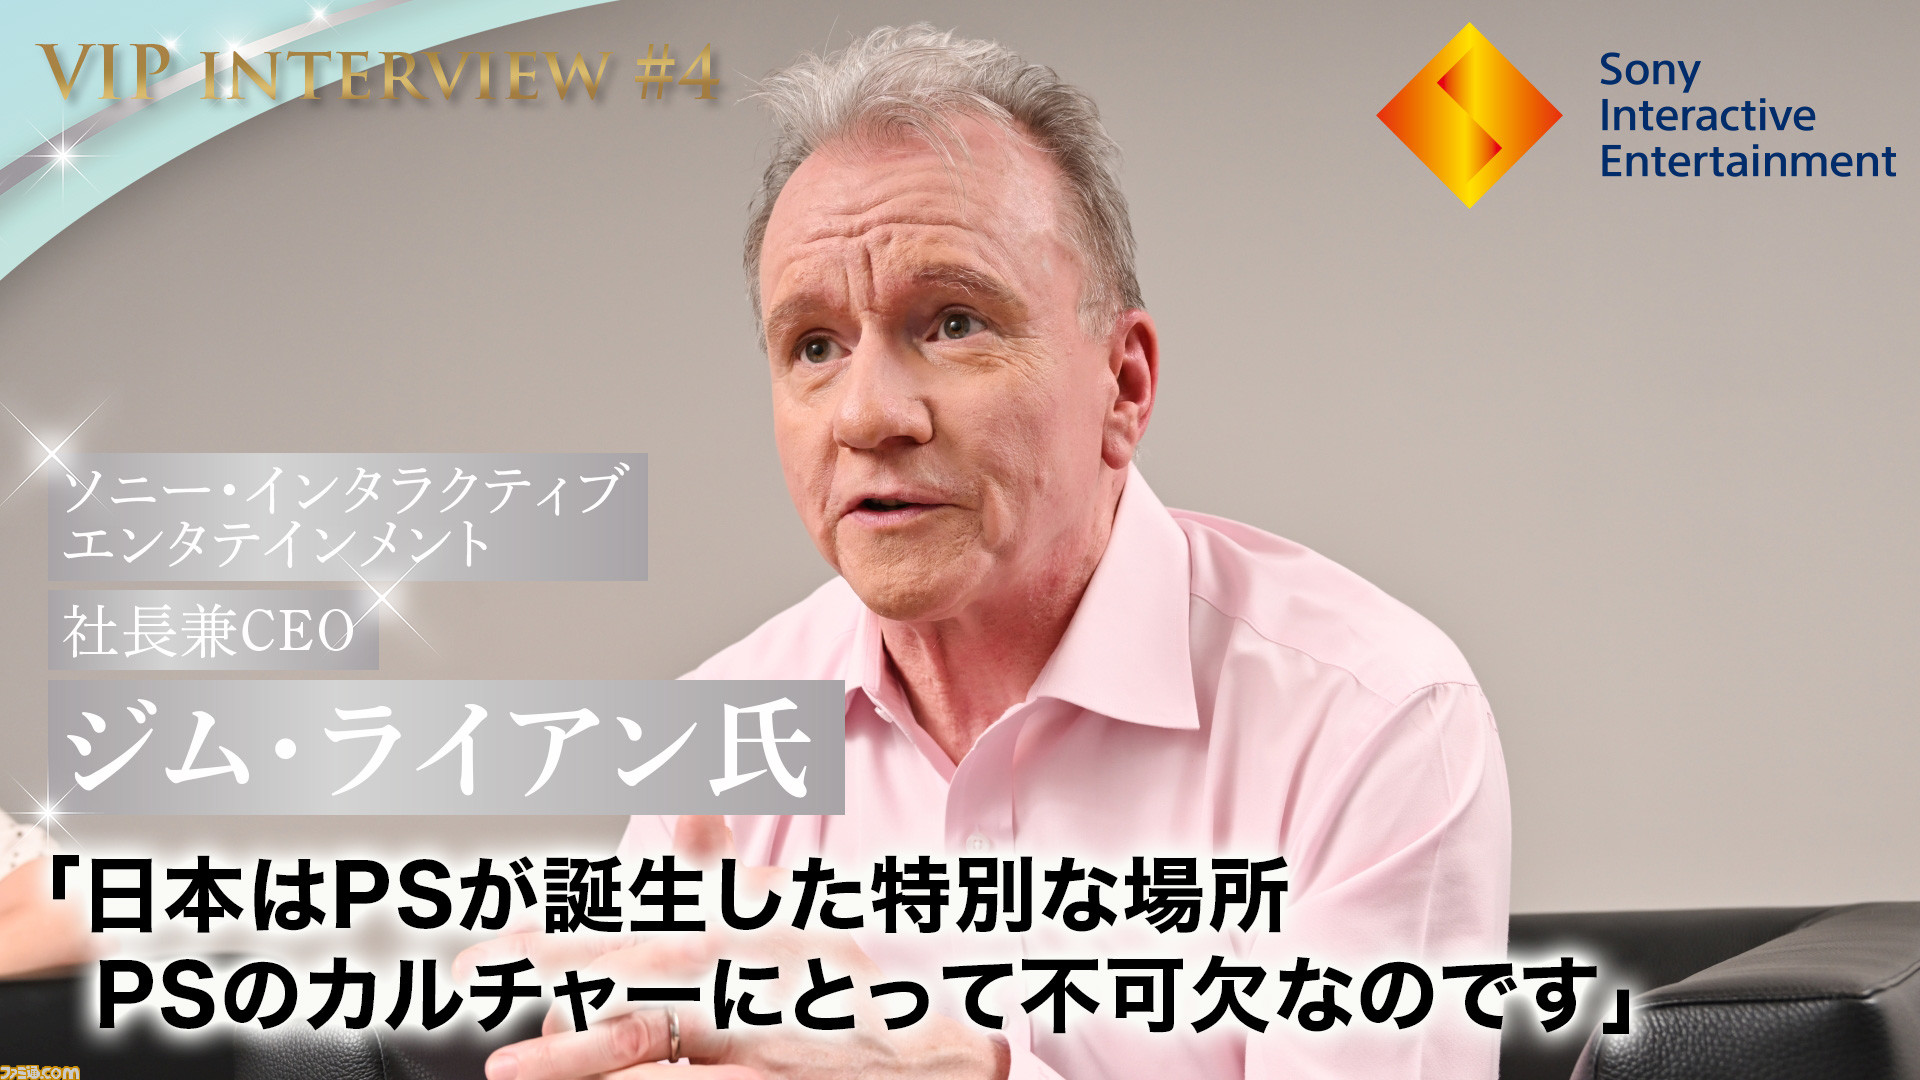 [閒聊] 吉姆萊恩:日本市場對PS來說非常重要